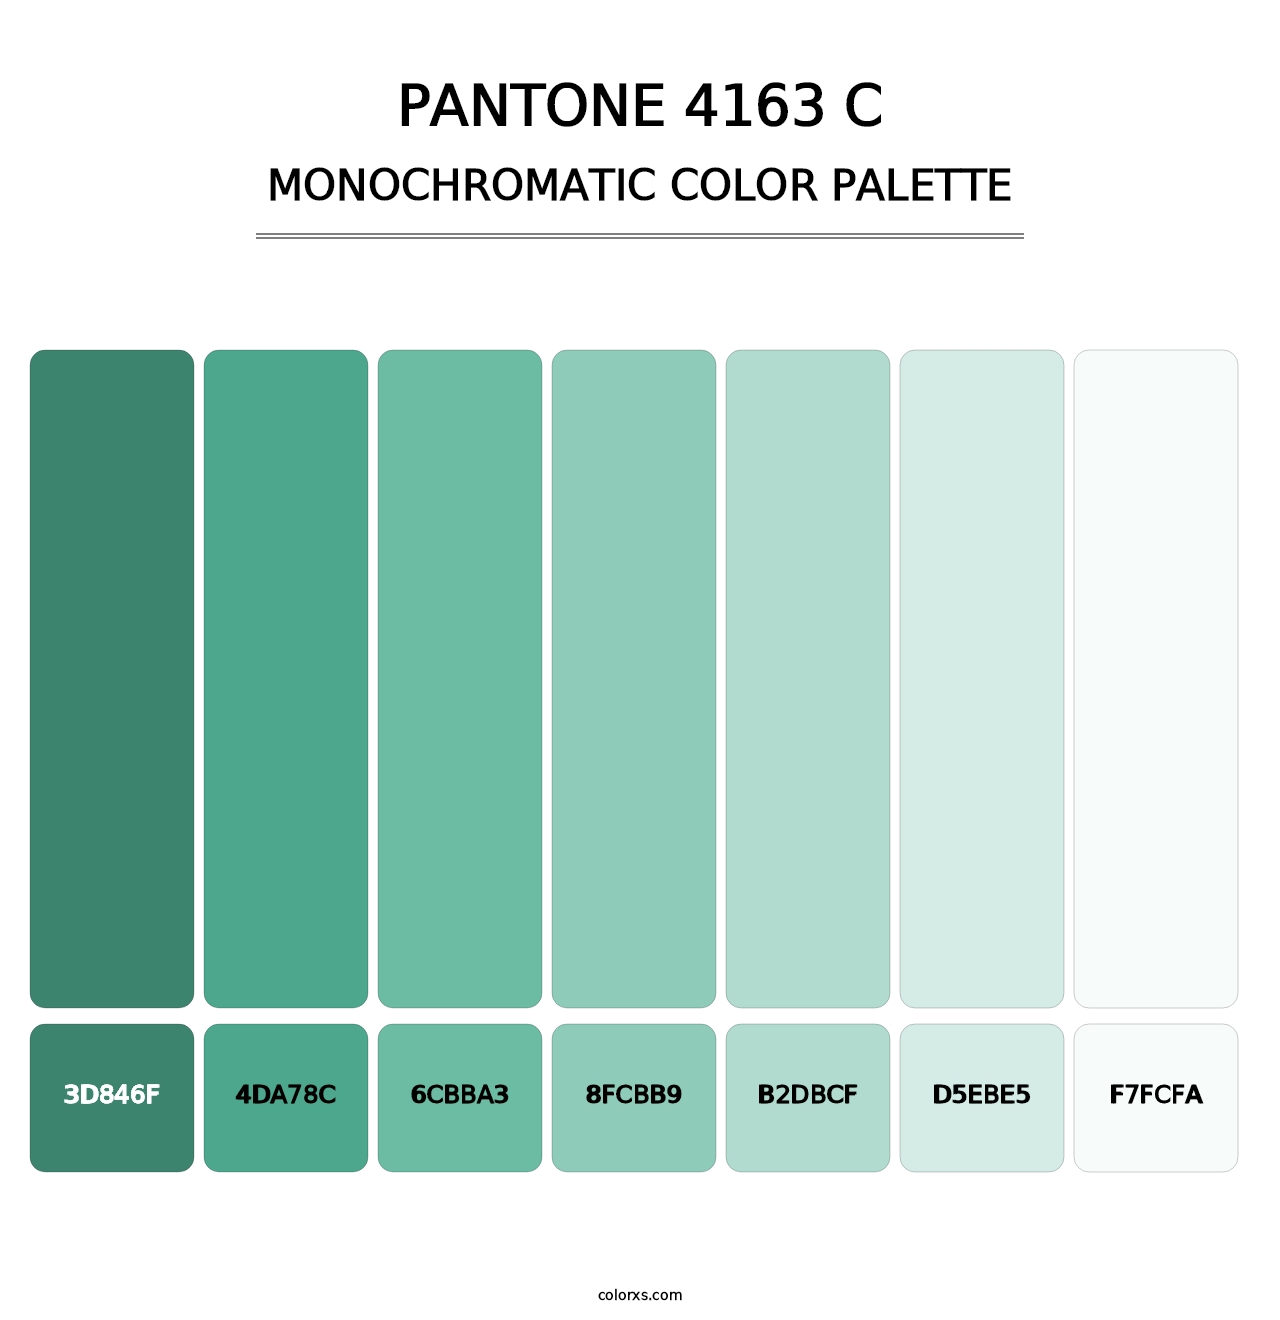 PANTONE 4163 C - Monochromatic Color Palette